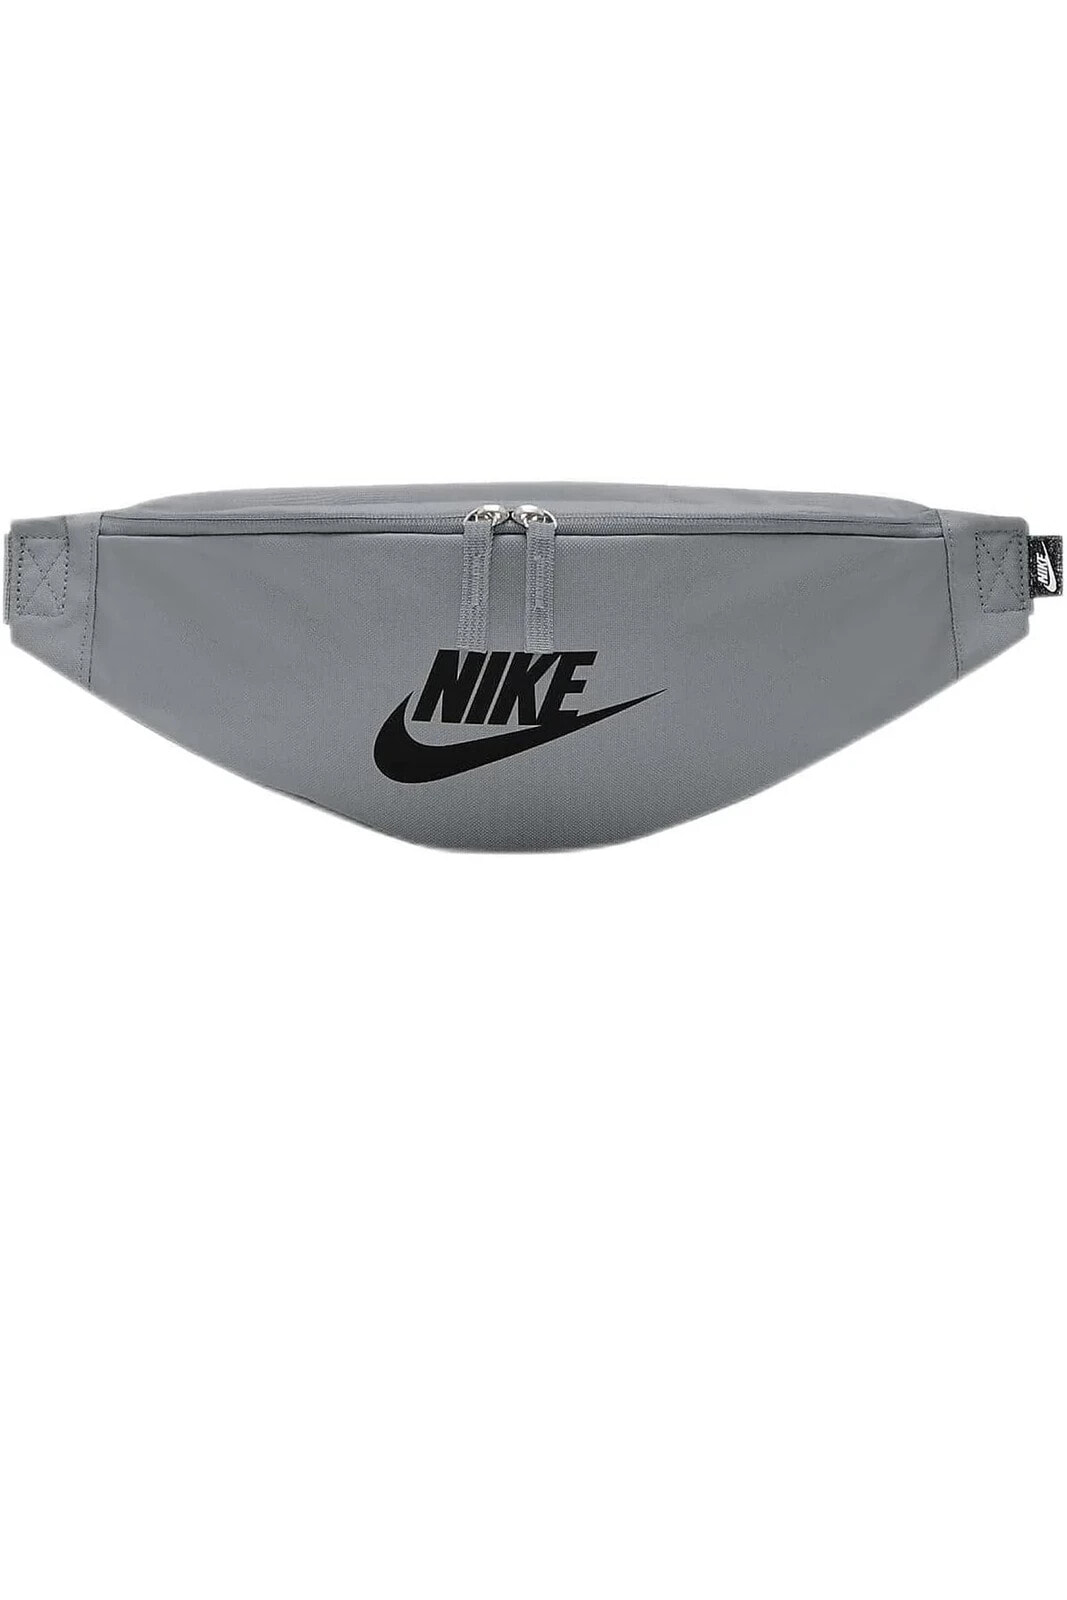 Bel Çantası Nike Çanta Nike Spor Çanta Bel Çantası Body Bag Çanta